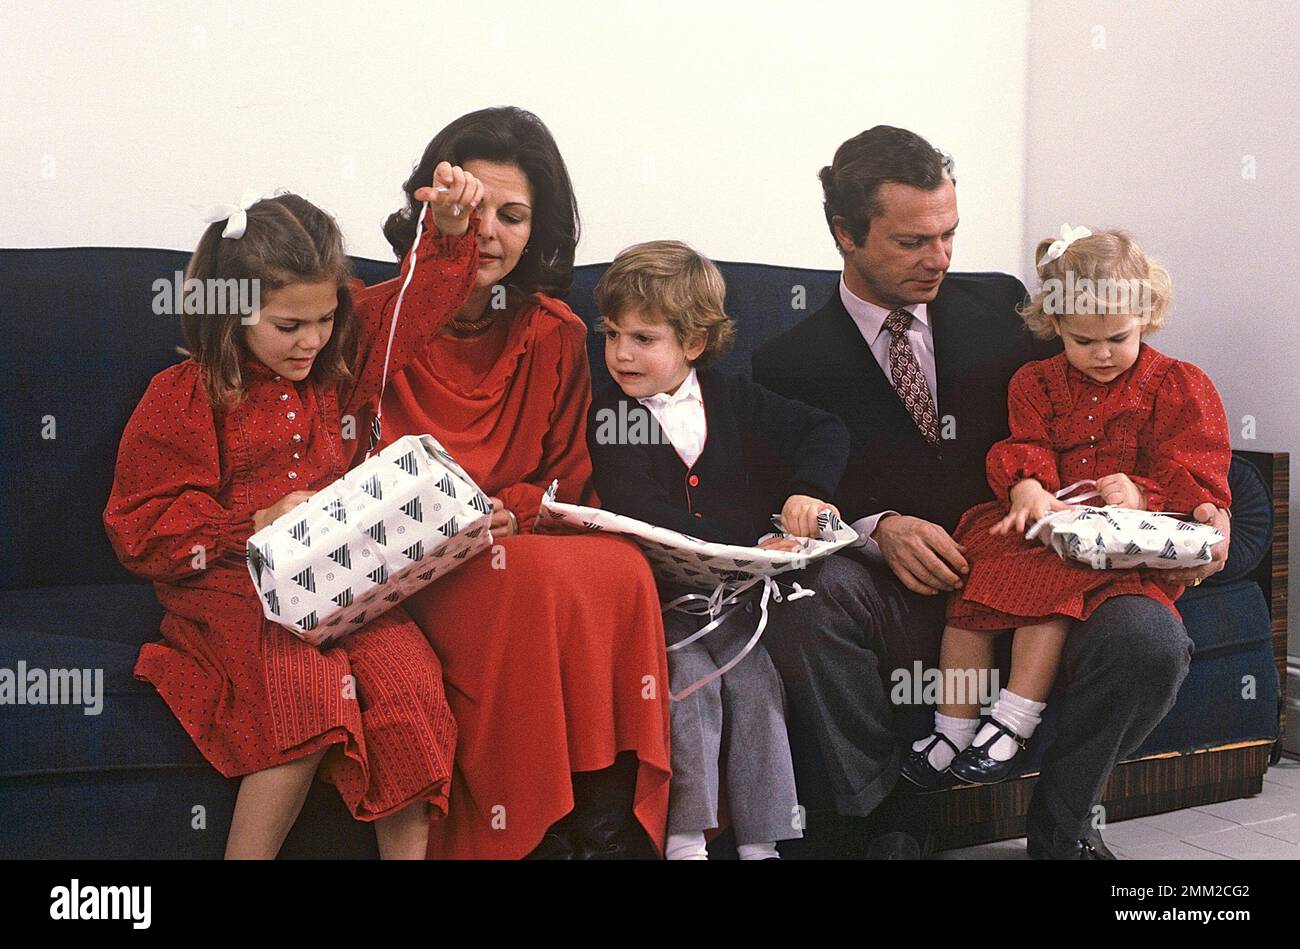 Carl XVI Gustaf, re di Svezia. Nato il 30 aprile 1946. Il re Carlo XVI Gustaf, la regina Silvia i loro figli, la principessa Madeleine, la principessa corona Victoria, il principe Carl Philip, durante l'annuale sessione fotografica di natale. Foto Stock